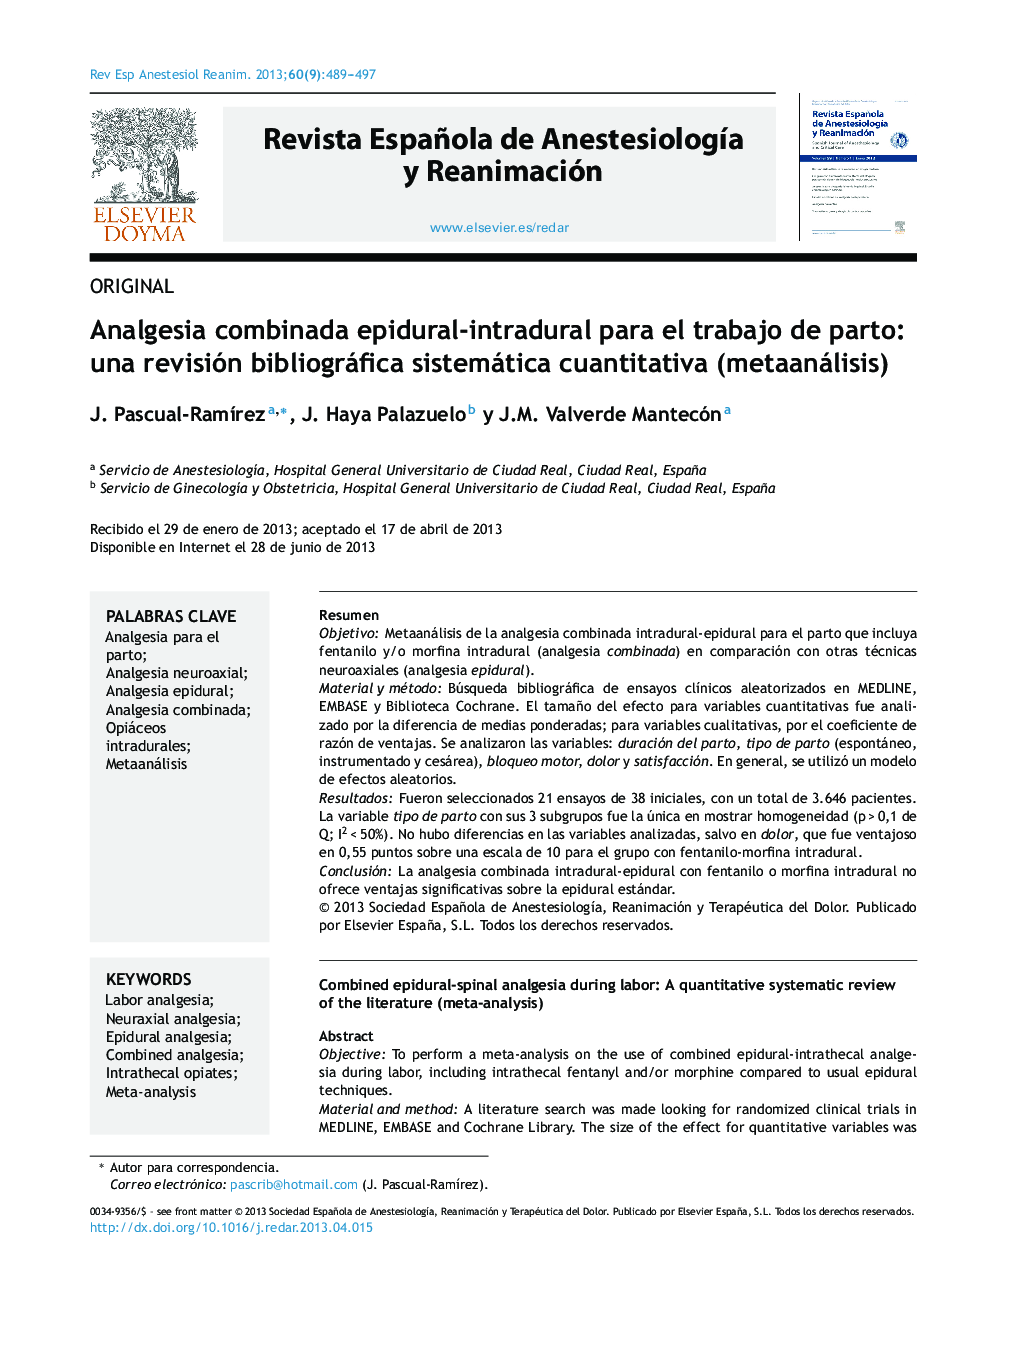 Analgesia combinada epidural-intradural para el trabajo de parto: una revisión bibliográfica sistemática cuantitativa (metaanálisis)